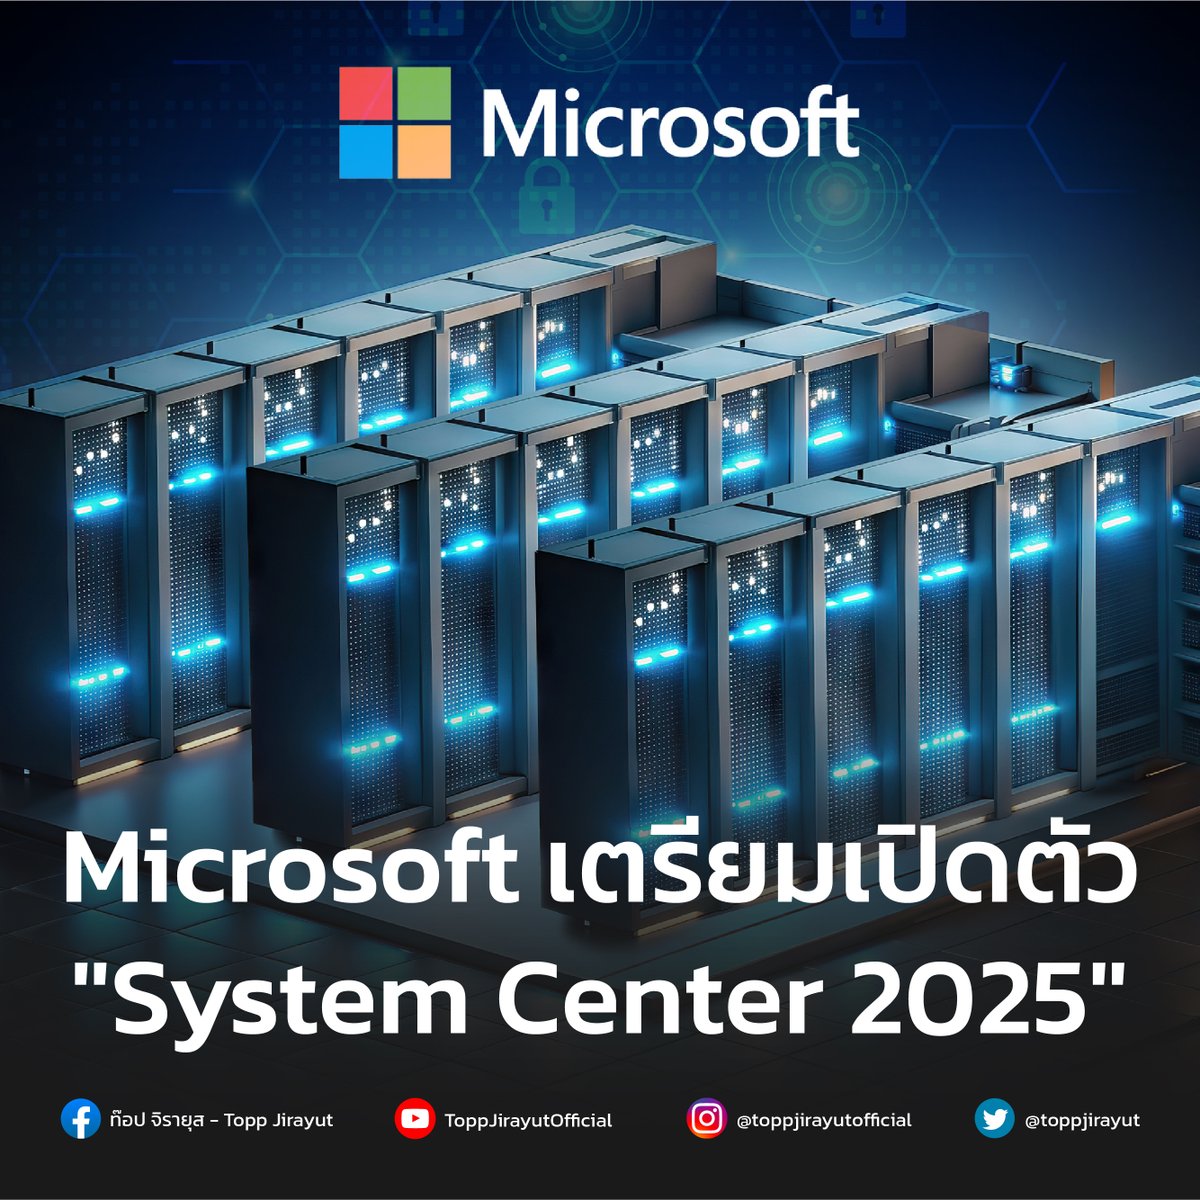 Microsoft อัปเดต 'System Center 2025' เพื่อปรับปรับปรุงโครงสร้างพื้นฐานให้ทันสมัย นอกจากนี้ยังเพิ่มฟีเจอร์ในการจัดการโครงสร้างพื้นฐานที่ต่างกันพร้อมระบบการรักษาความปลอดภัยที่ปรับแต่งใหม่ให้มีประสิทธิภาพเพิ่มมากขึ้น 

bit.ly/4angt8u

#SystemCenter #Toppjirayut